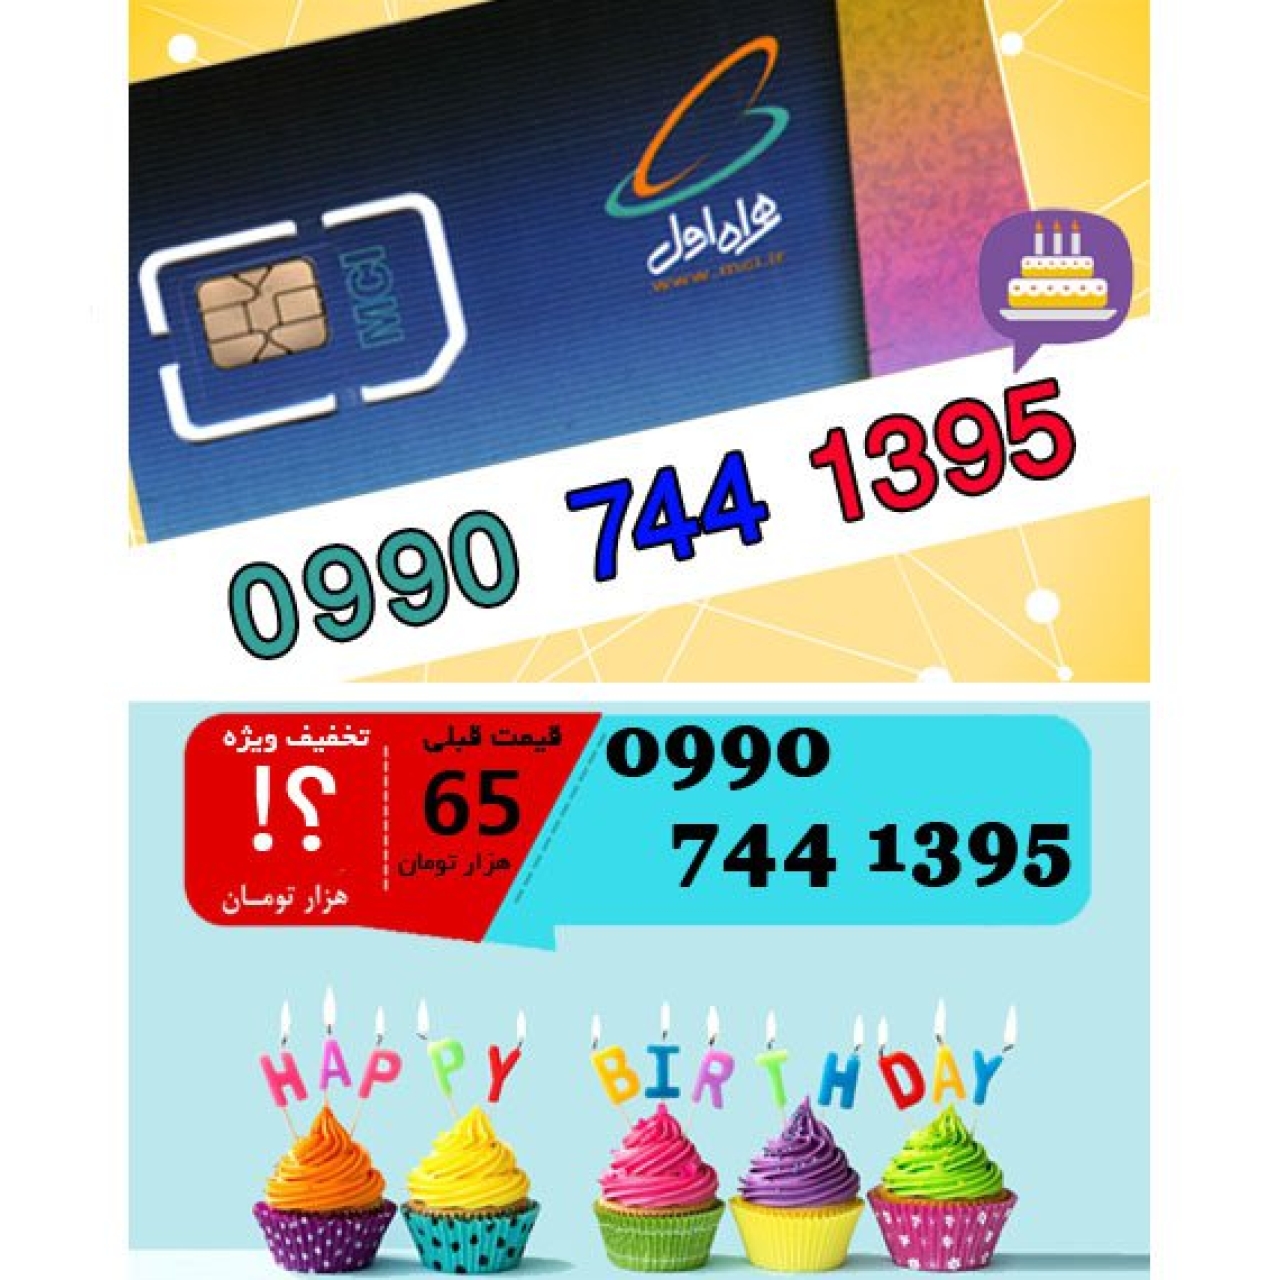 سیم کارت اعتباری همراه اول 09907441395 تاریخ تولد